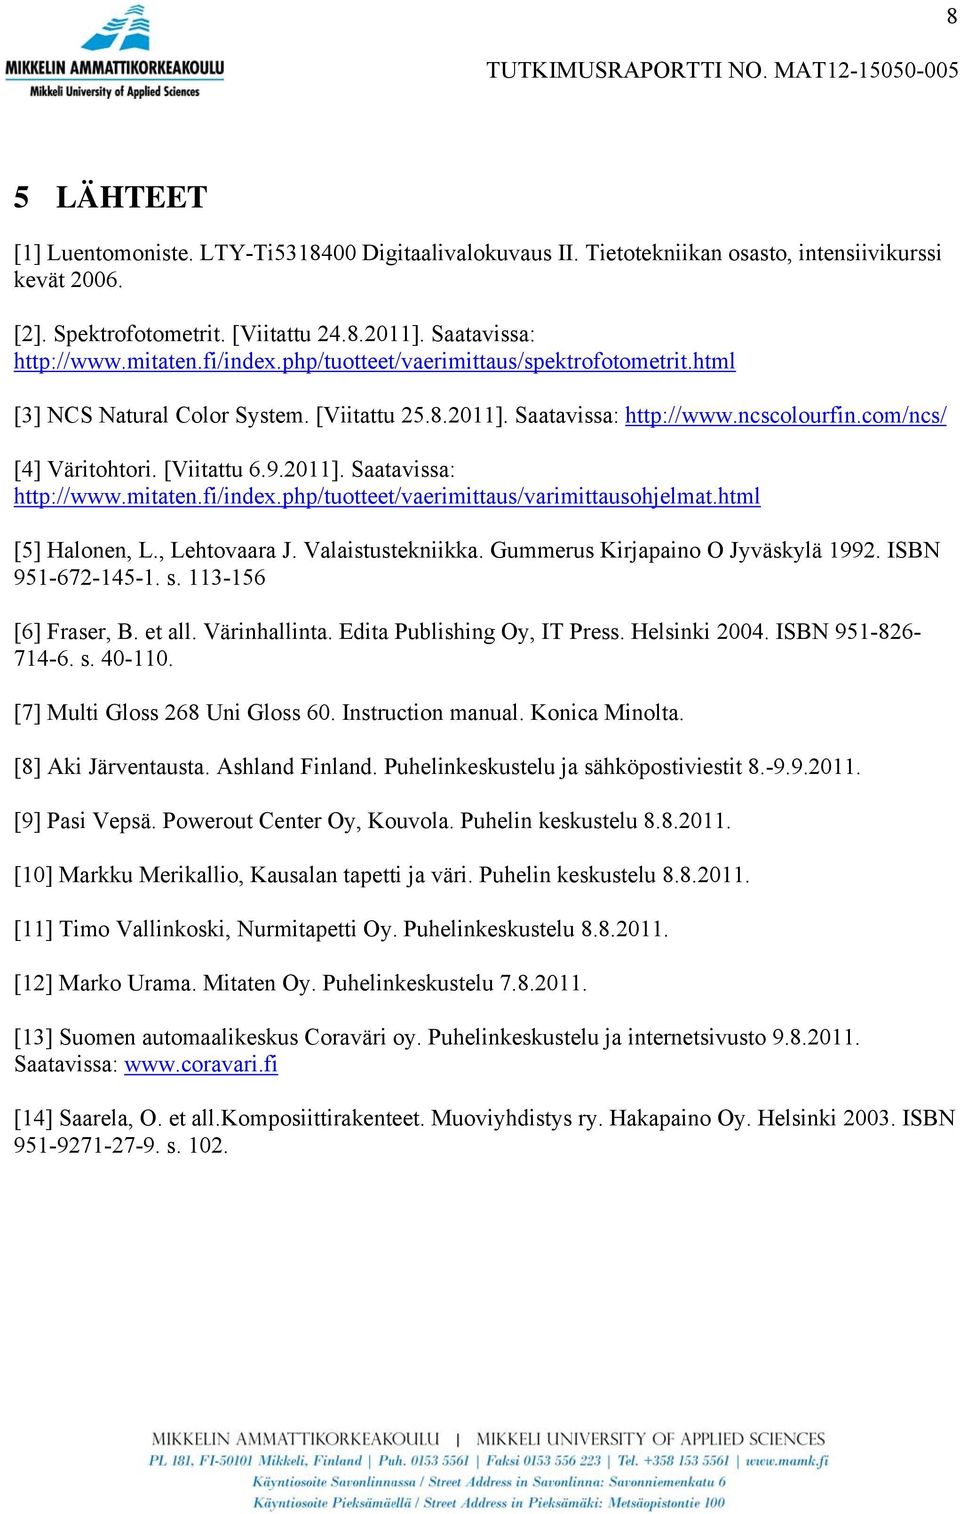 fi/index.php/tuotteet/vaerimittaus/varimittausohjelmat.html [5] Halonen, L., Lehtovaara J. Valaistustekniikka. Gummerus Kirjapaino O Jyväskylä 1992. ISBN 951-672-145-1. s. 113-156 [6] Fraser, B.